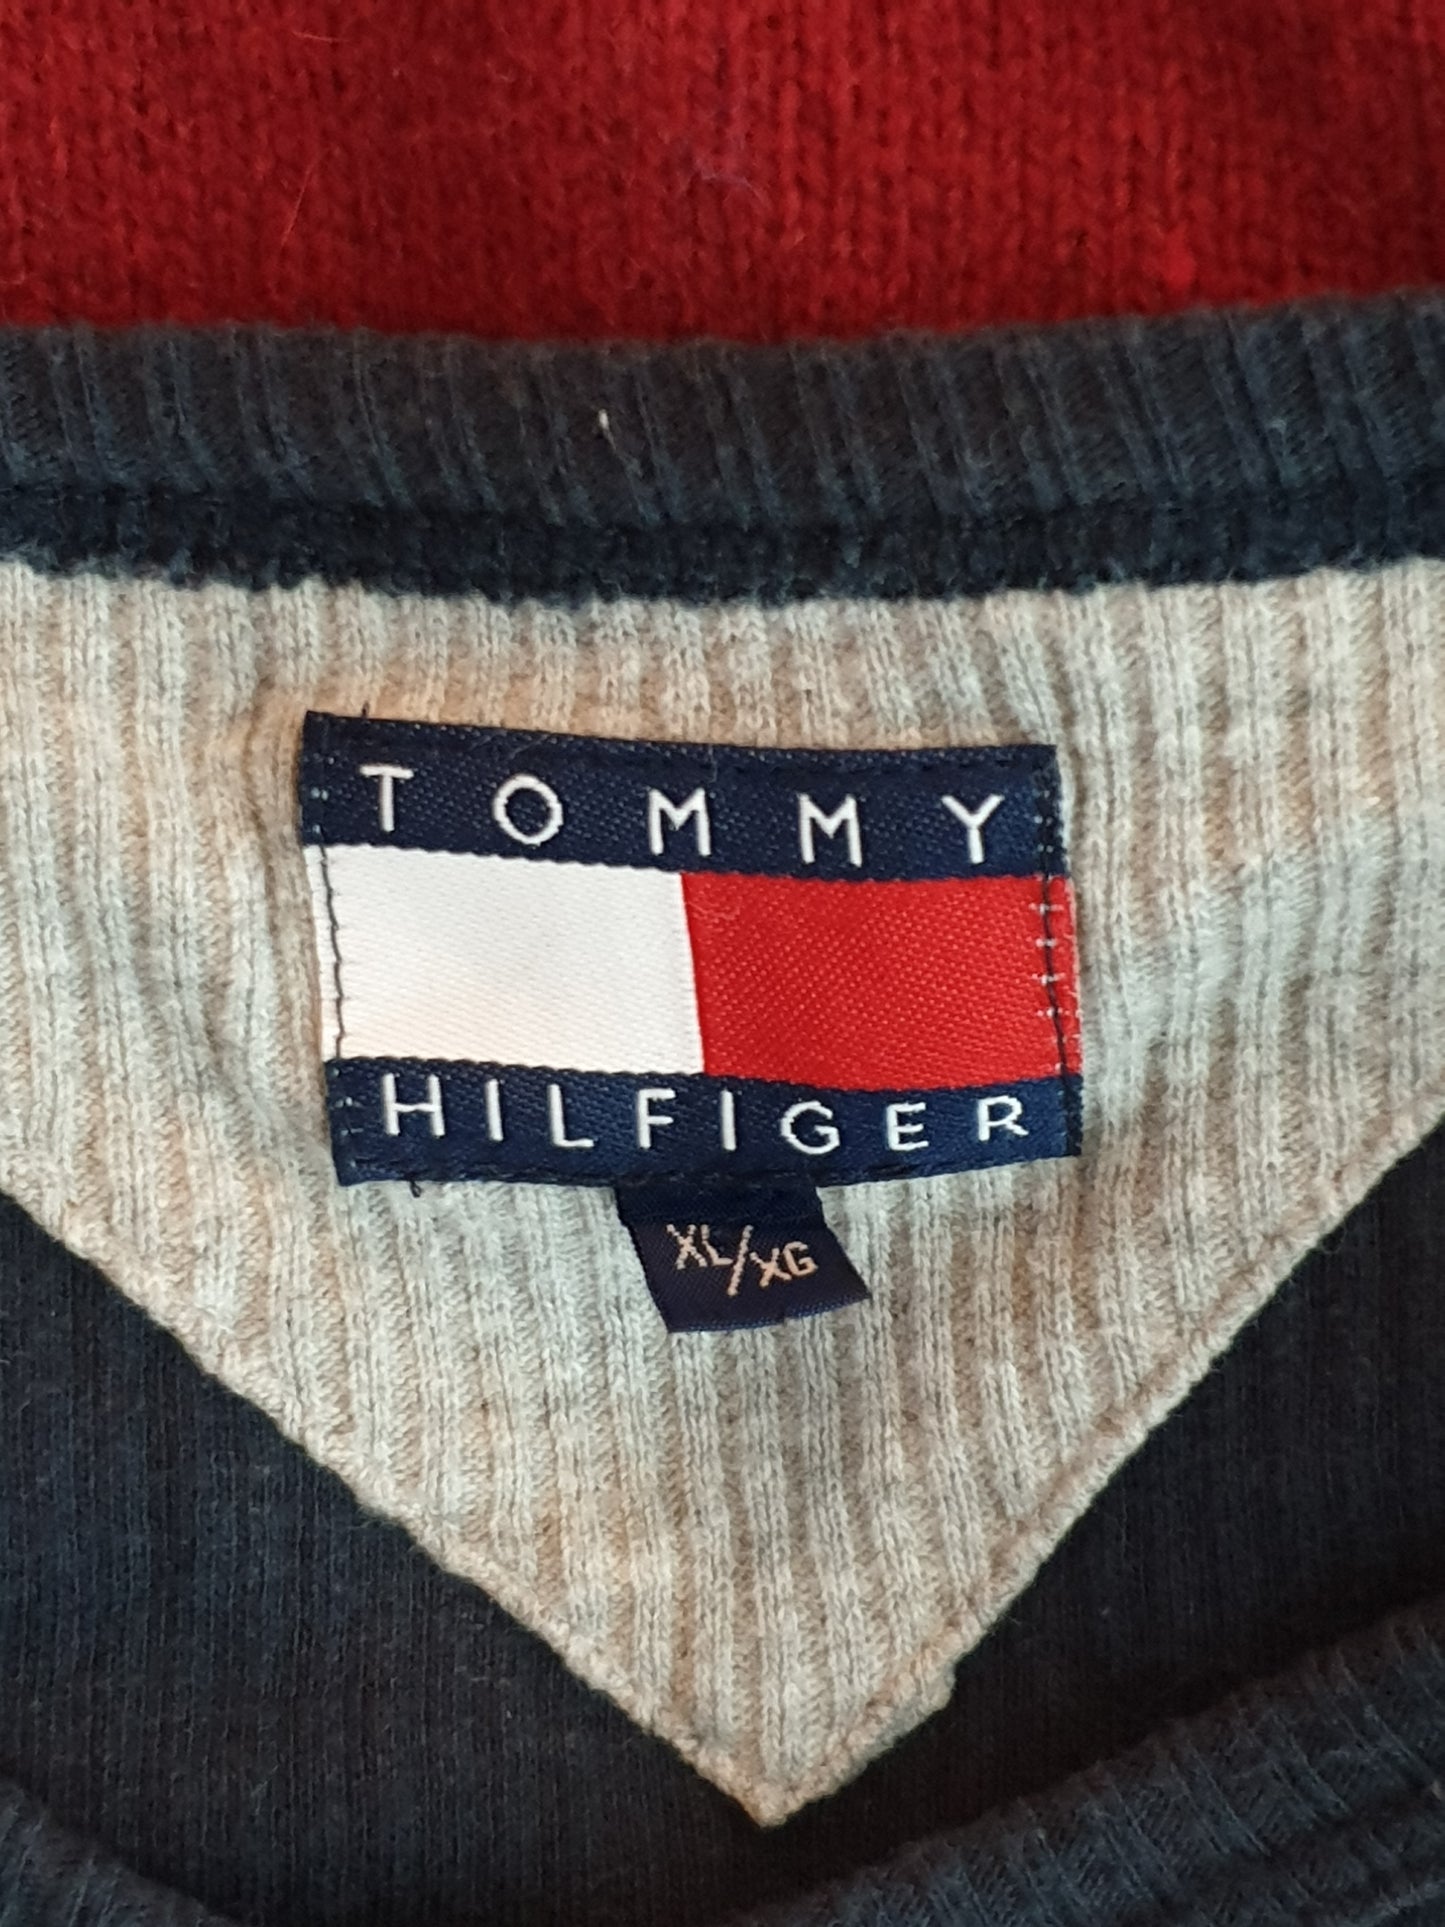 Tommy Hilfiger - Pullover - Ripp Optik - Dunkelblau - Herren - XL